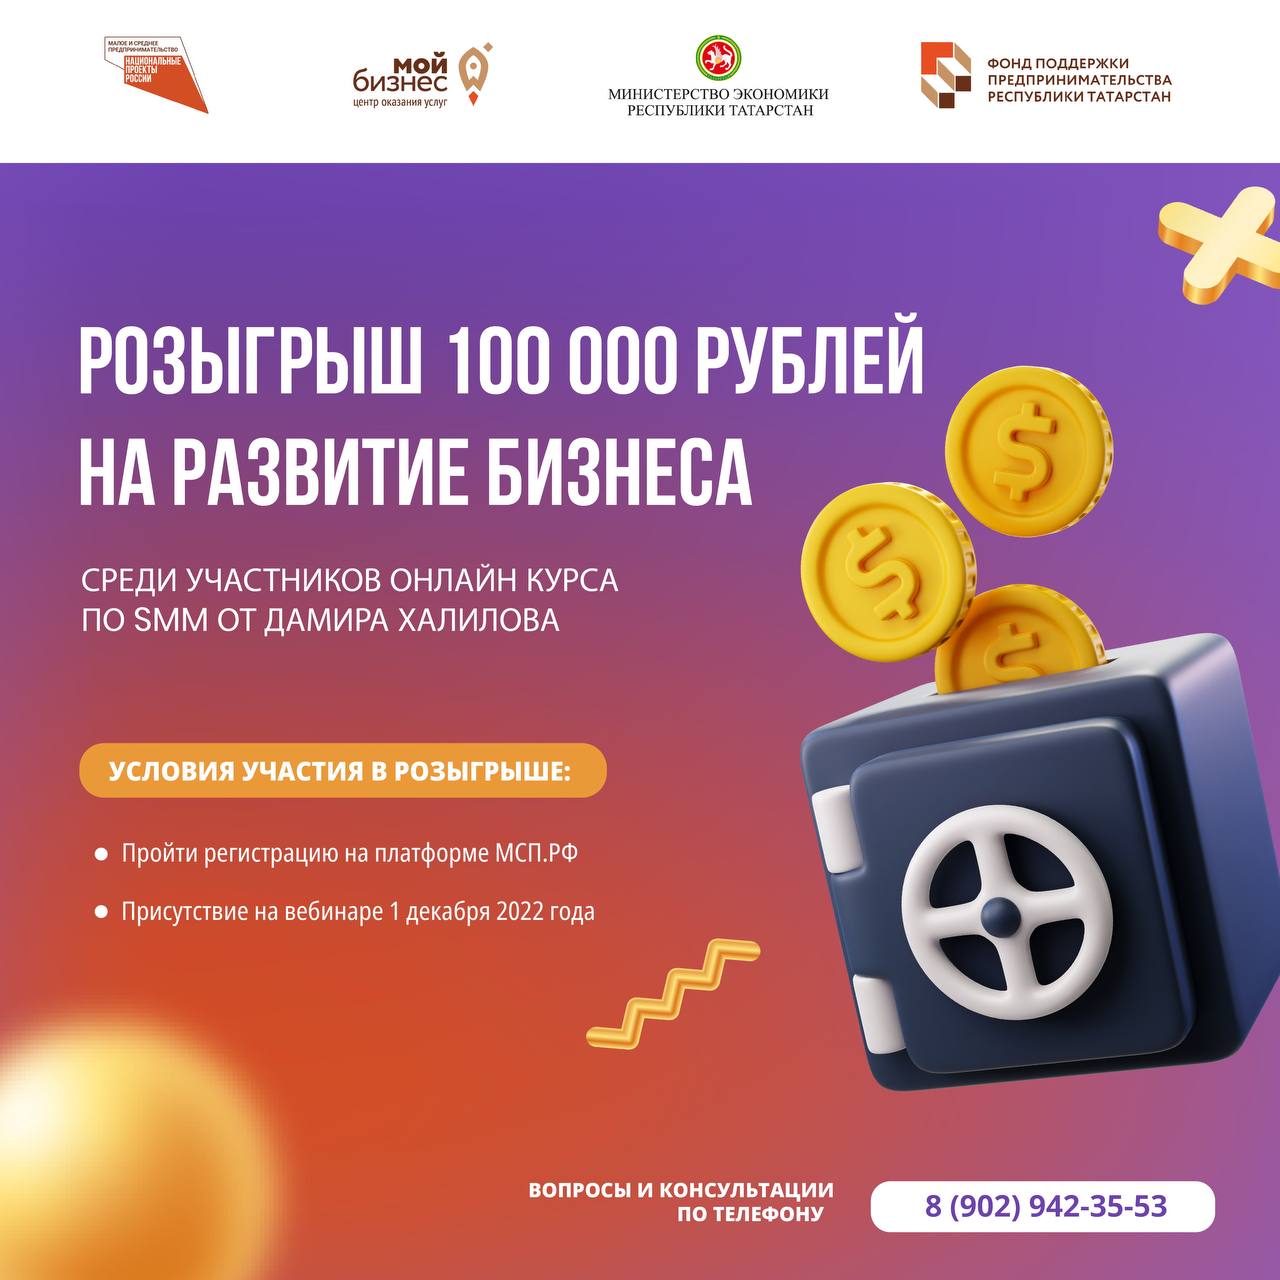 Успейте зарегистрироваться на SMM-курс от Дамира Халилова и получить главный приз 100 000 рублей!